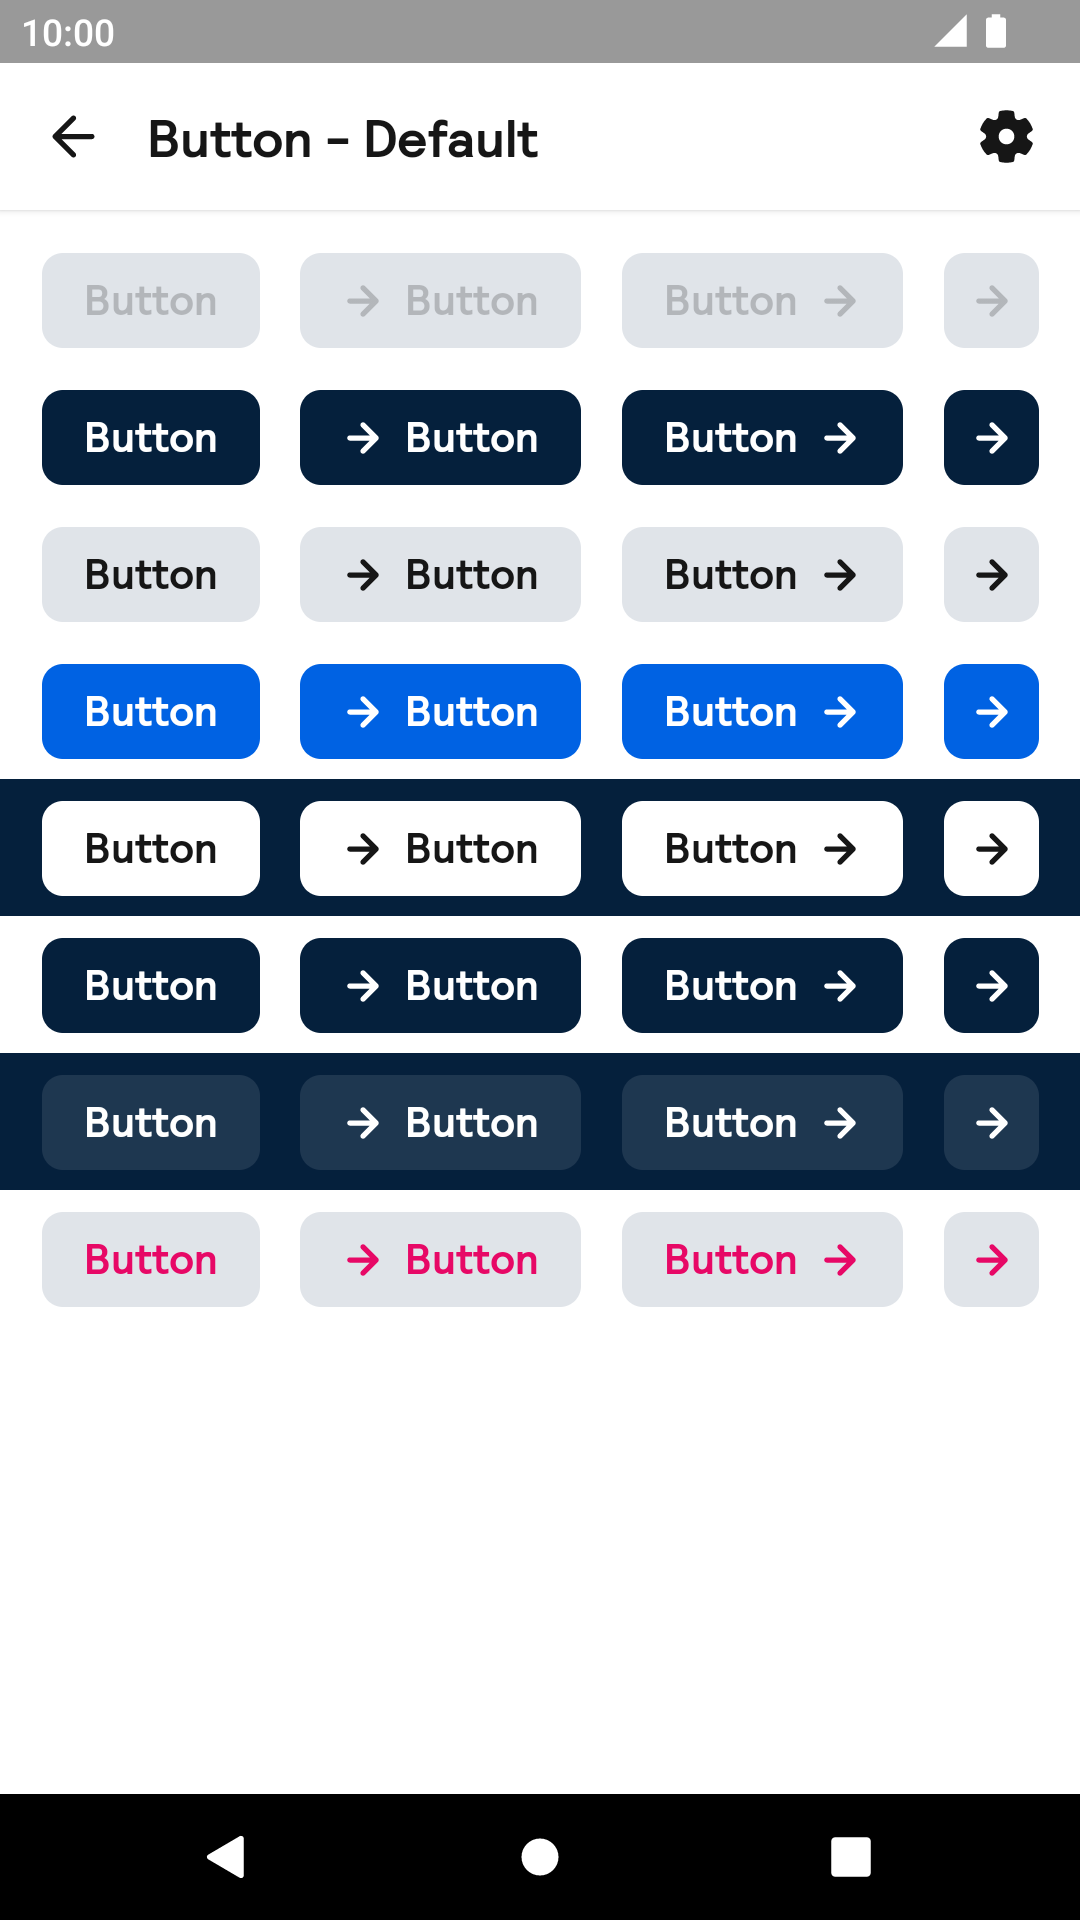 Button component